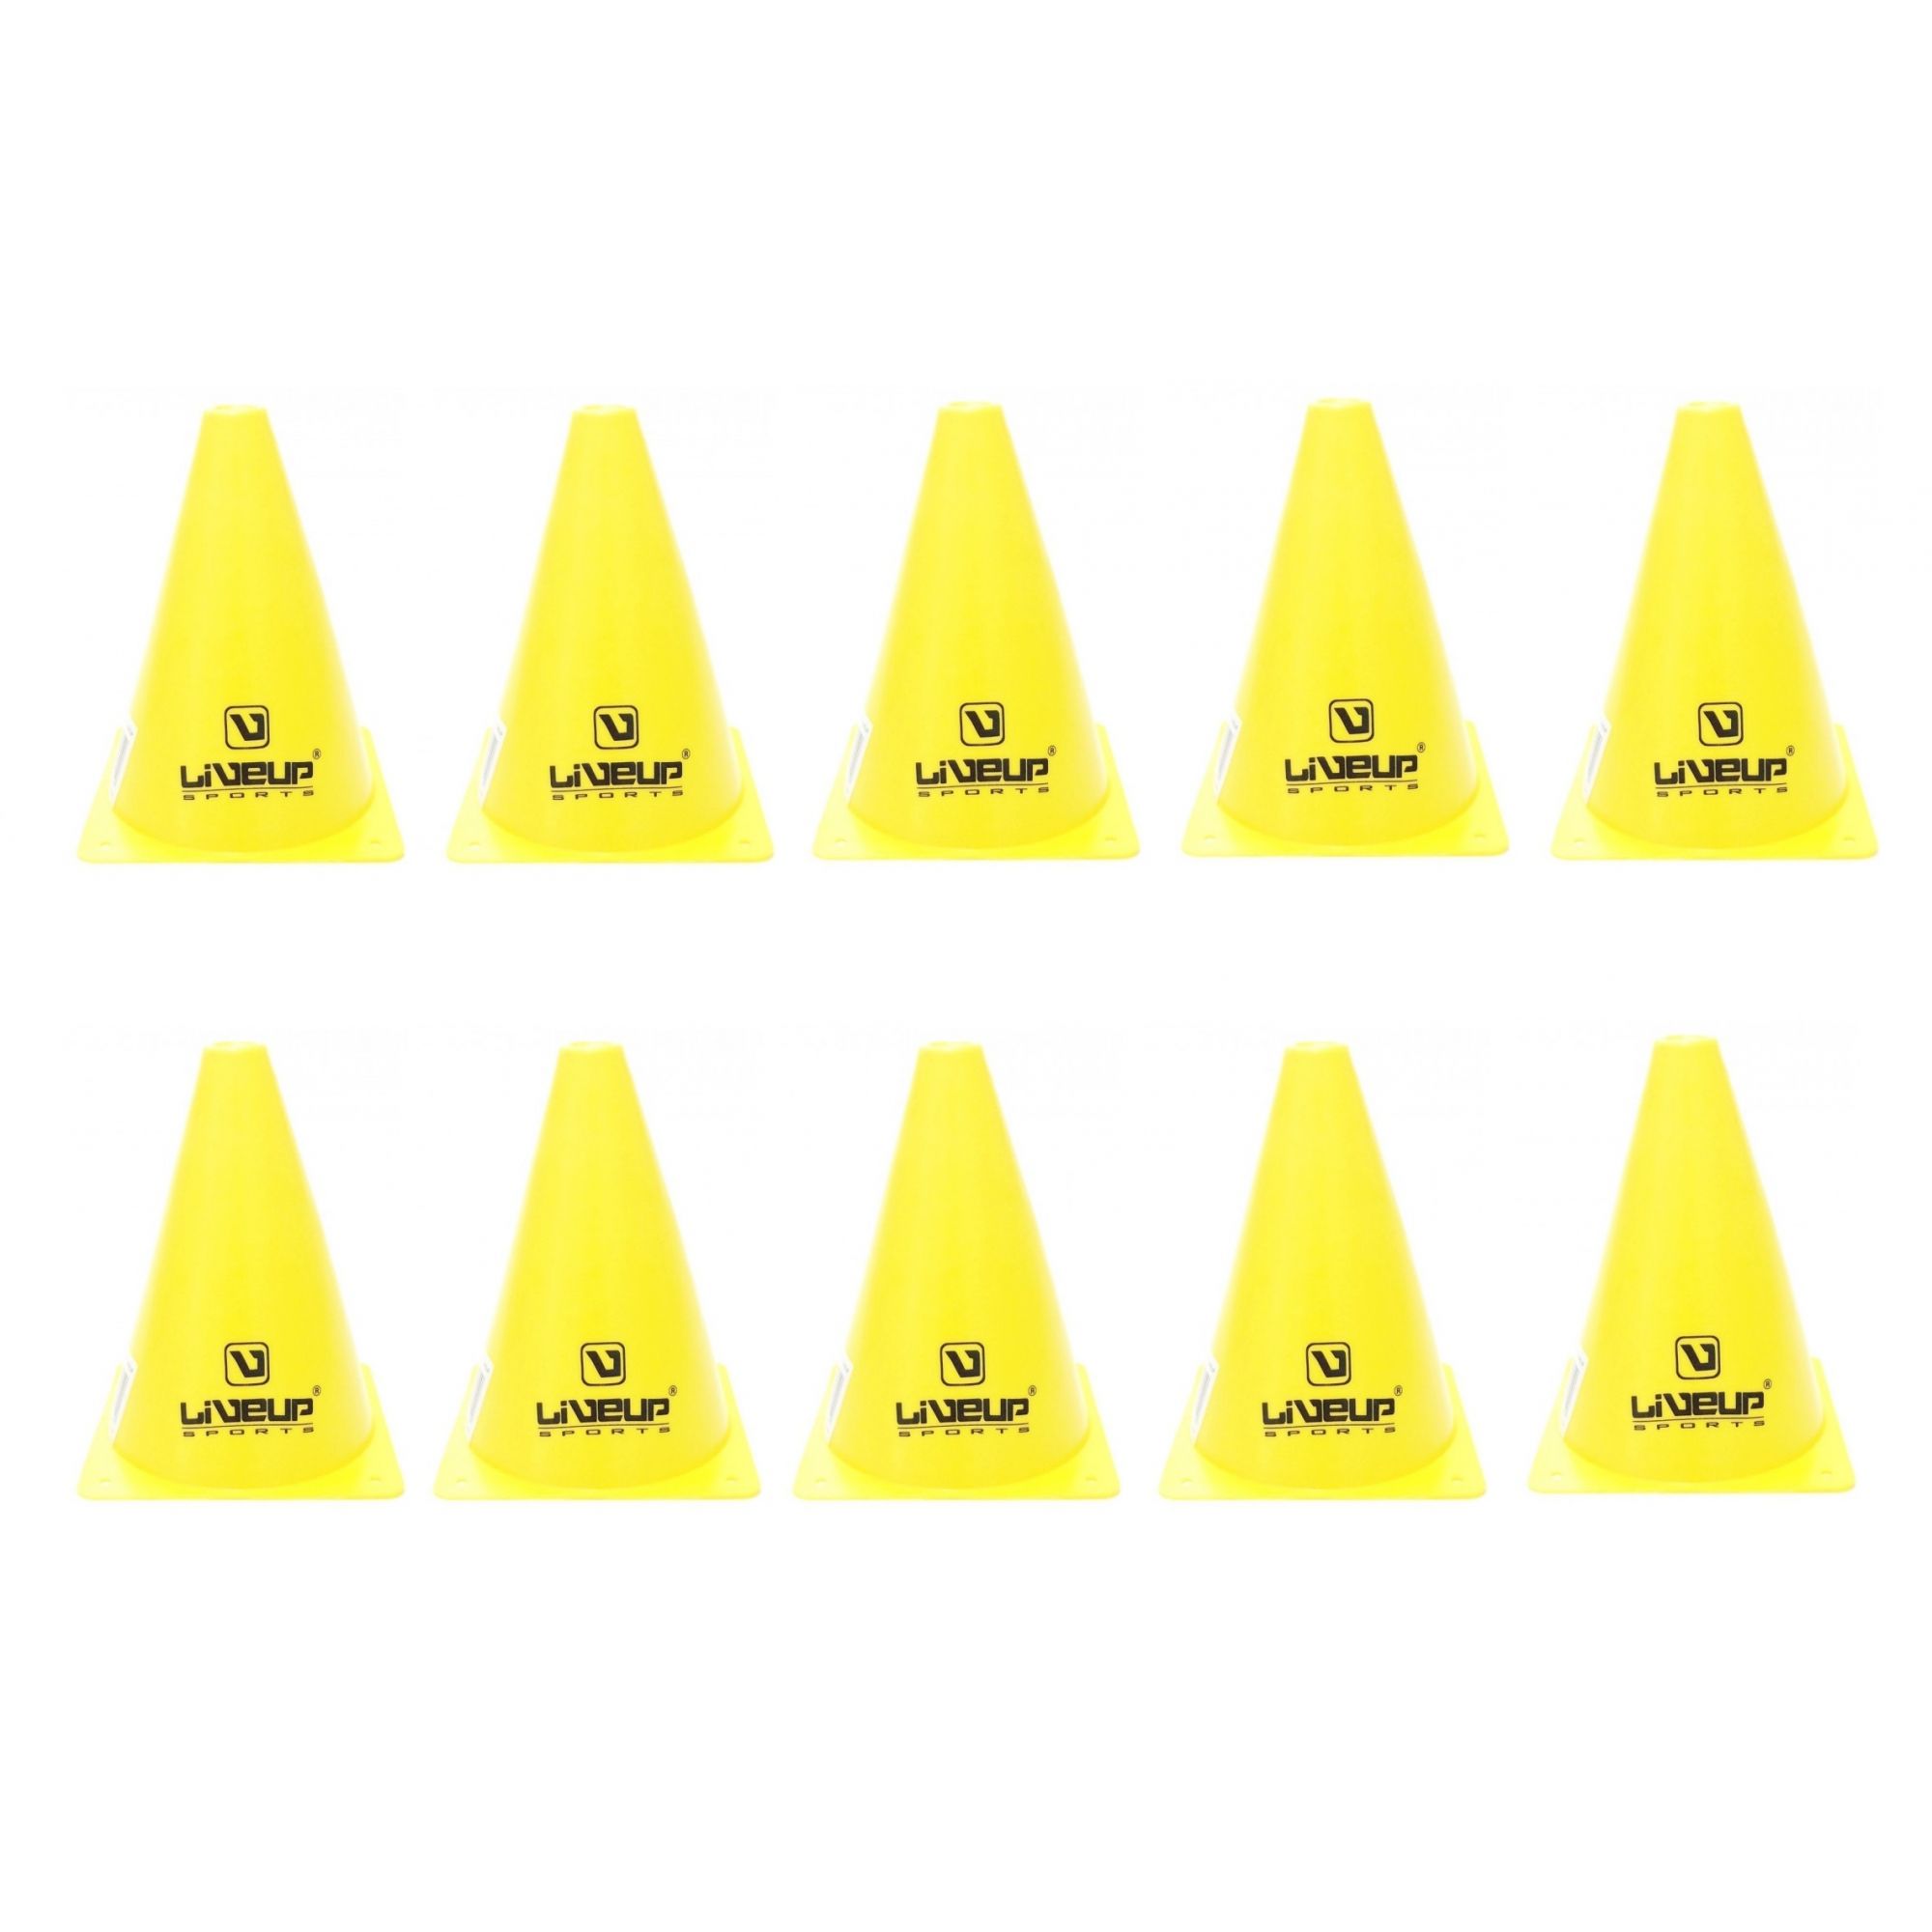 Kit com 10 Cones de Agilidade Amarelo LiveUp - 18cm